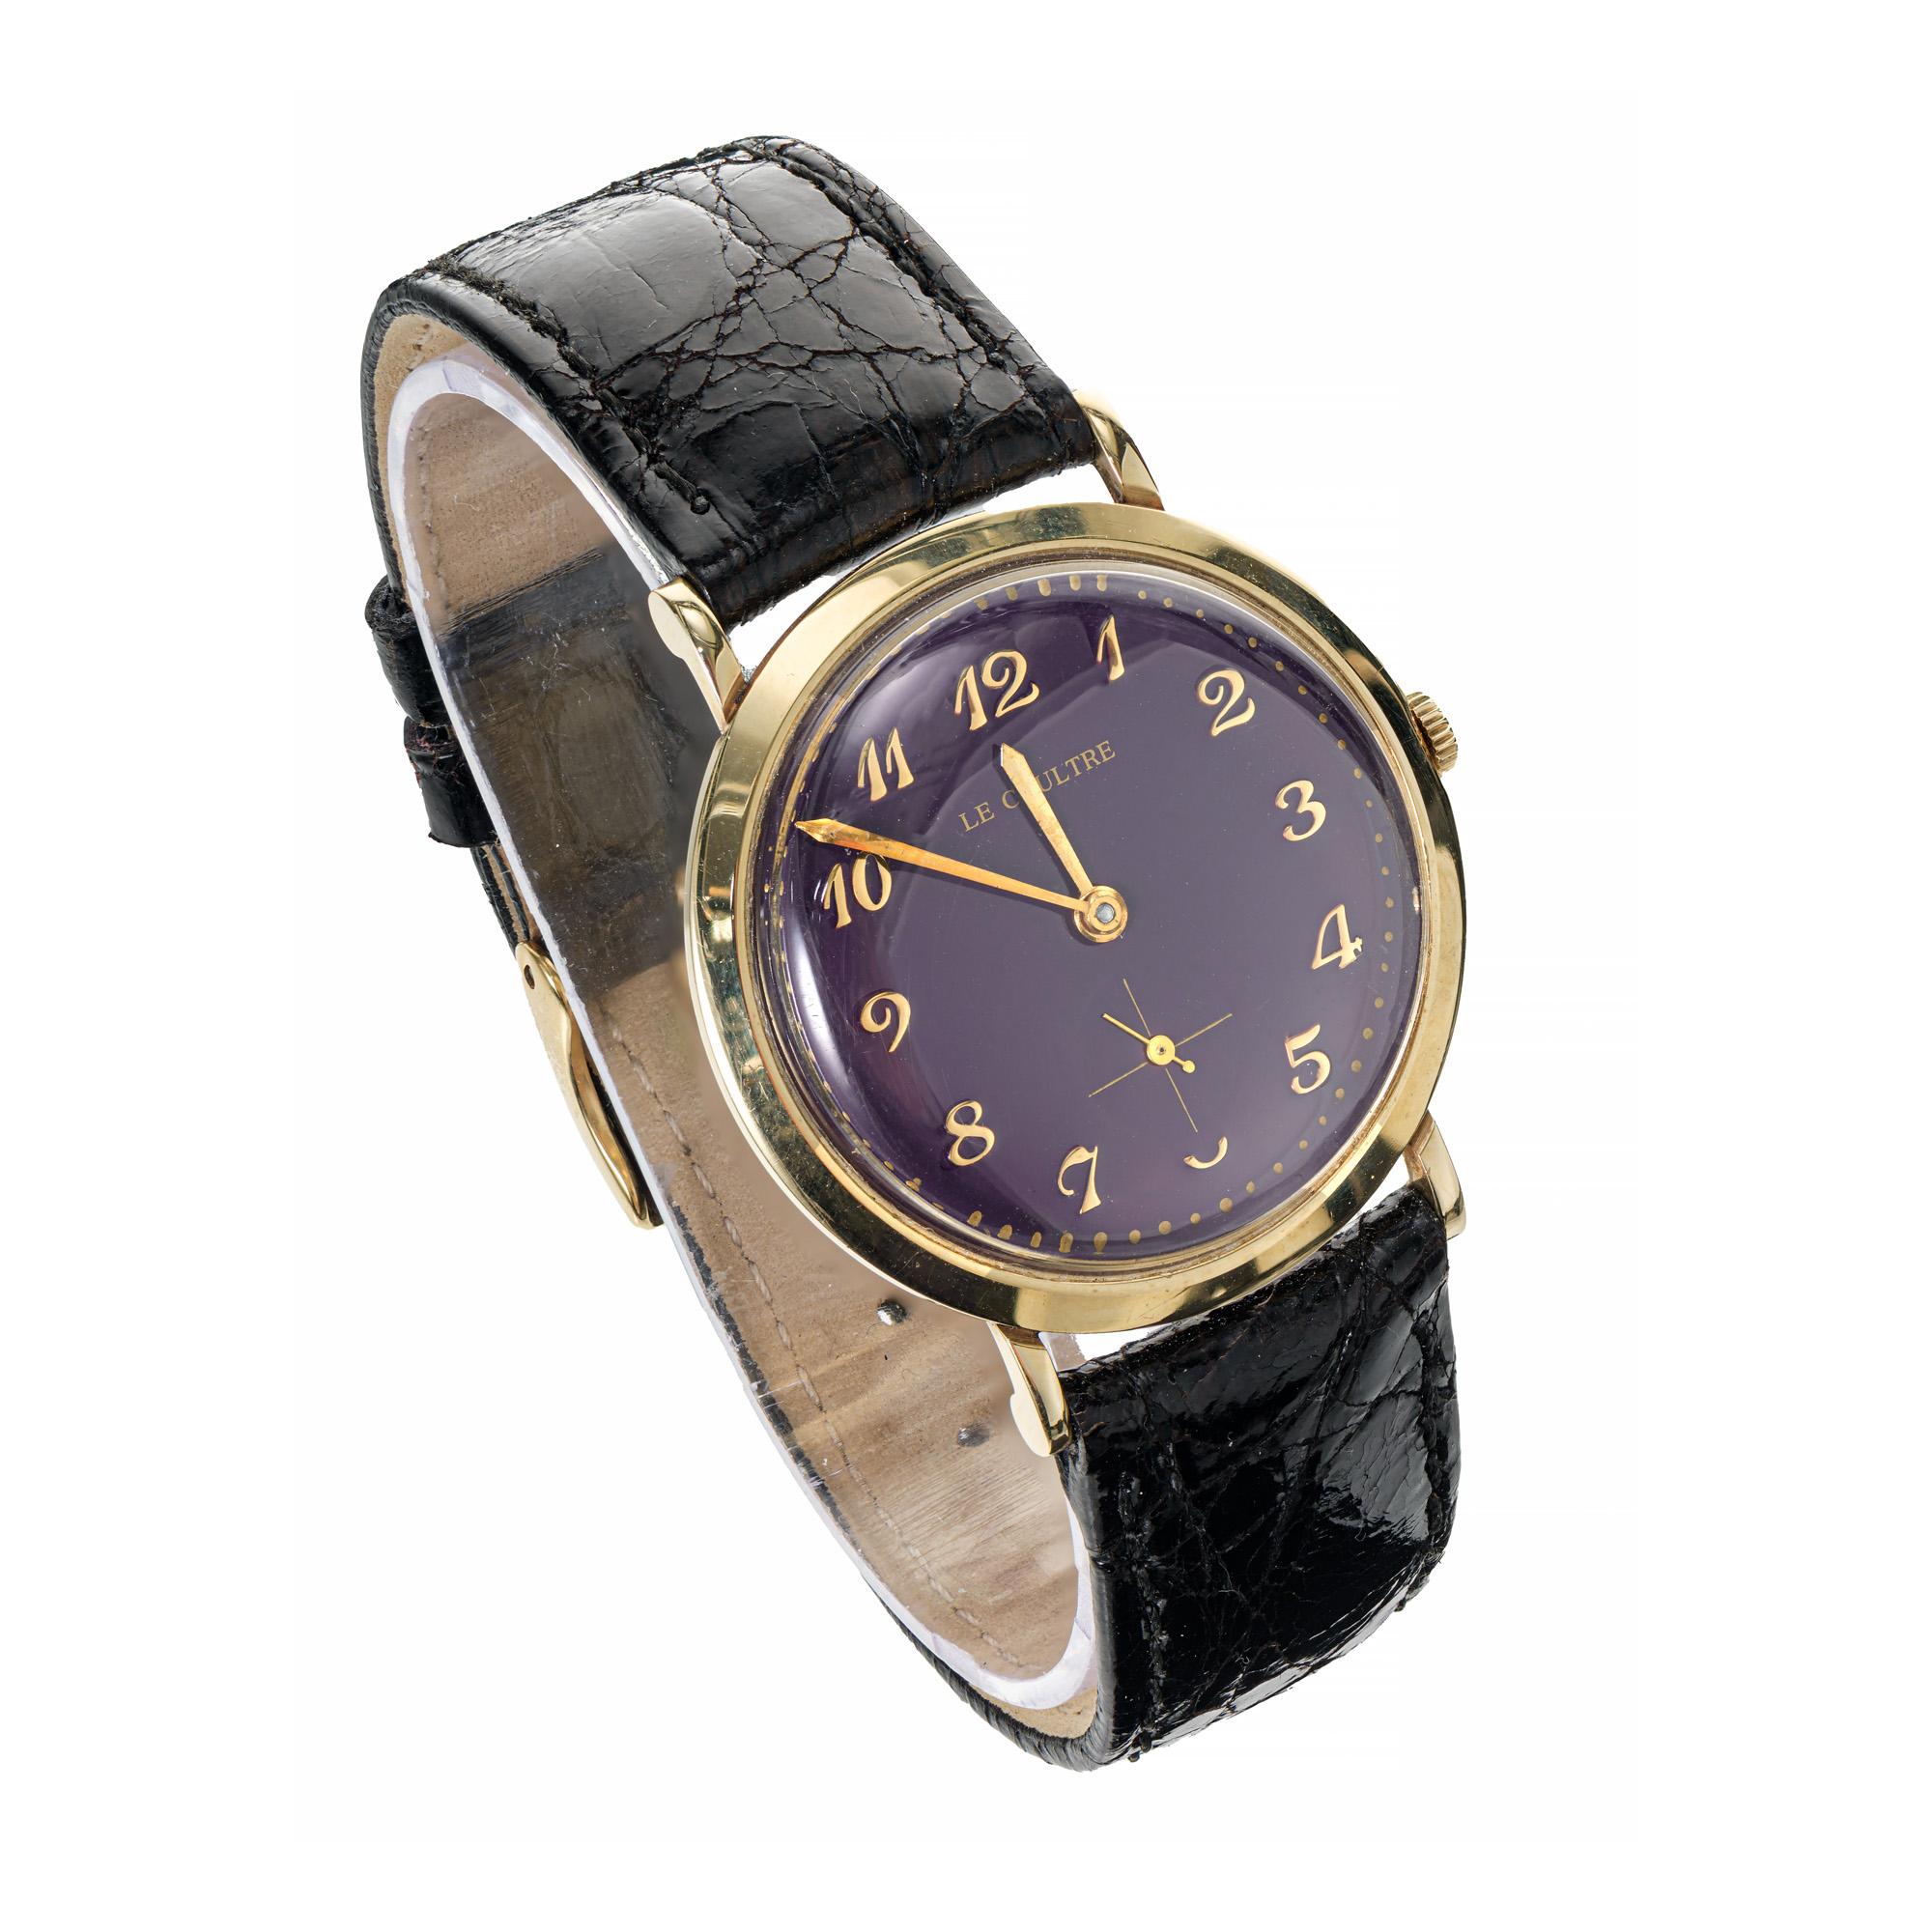 1960's LeCoultre 14k Gelbgold Armbanduhr mit benutzerdefinierten farbigen hellen tief lila Zifferblatt Armbanduhr. Klassische LeCoultre-Herrenarmbanduhr mit goldener Lünette und neu gestaltetem, farbigem Zifferblatt. Farbe nicht original zu sehen.